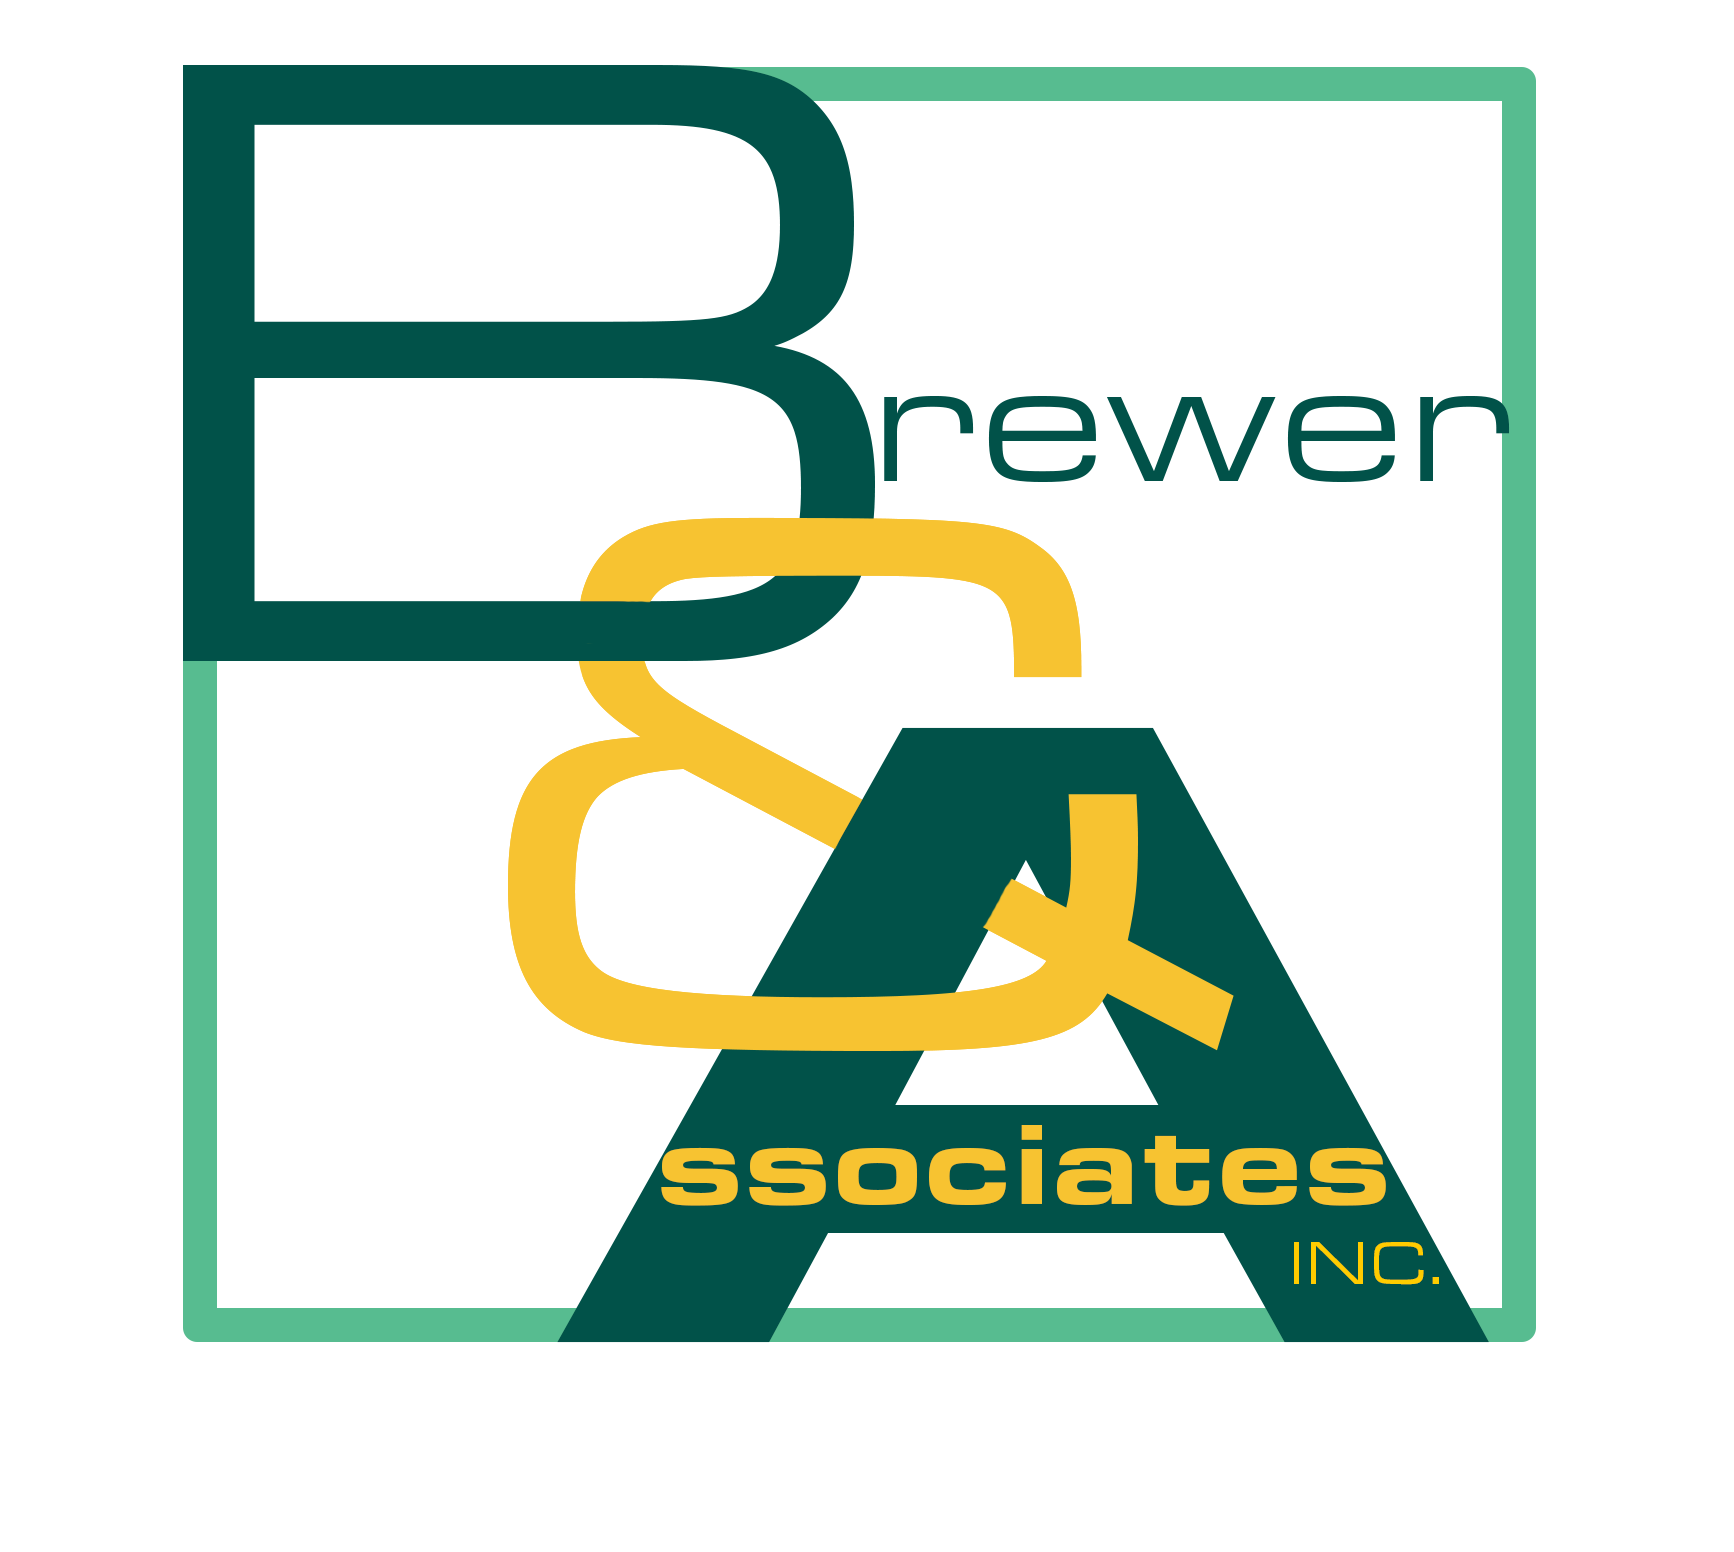 Brewer & Associates, Inc.